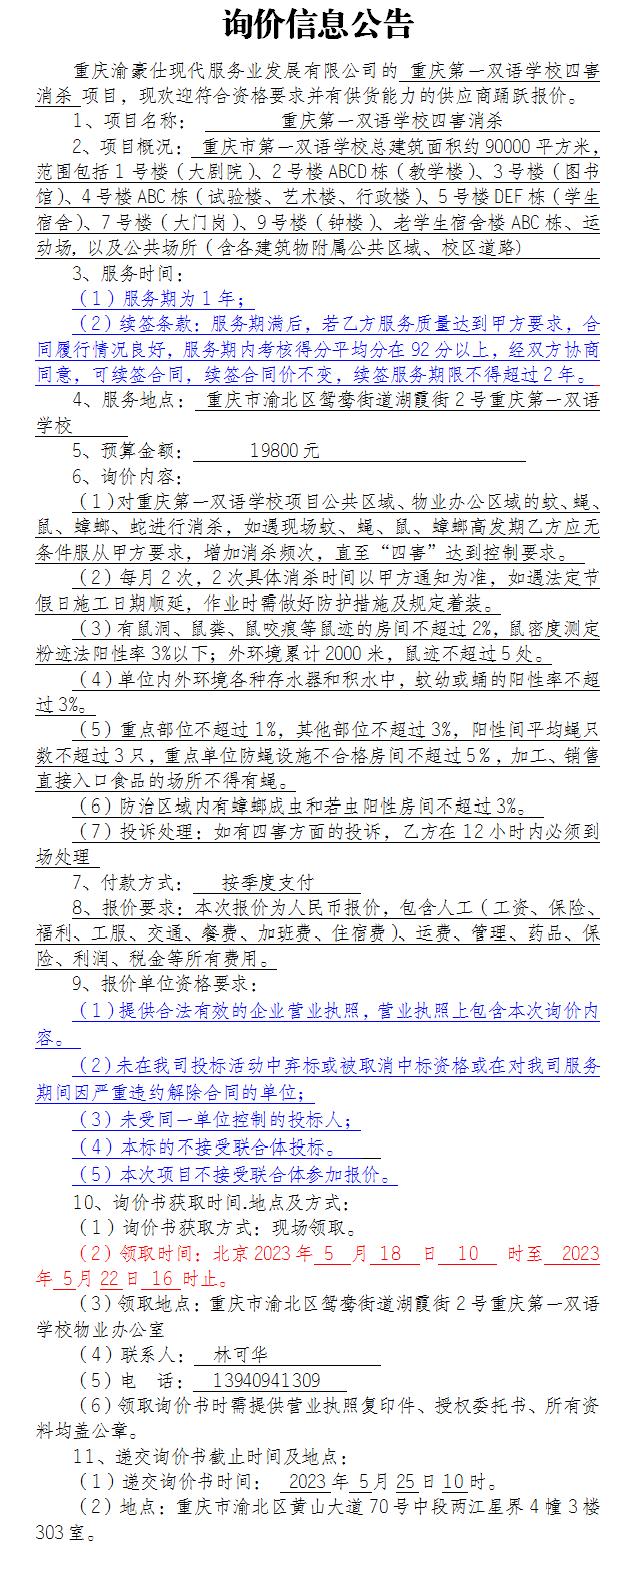 重庆第一双语学校四害消杀项目询价公告